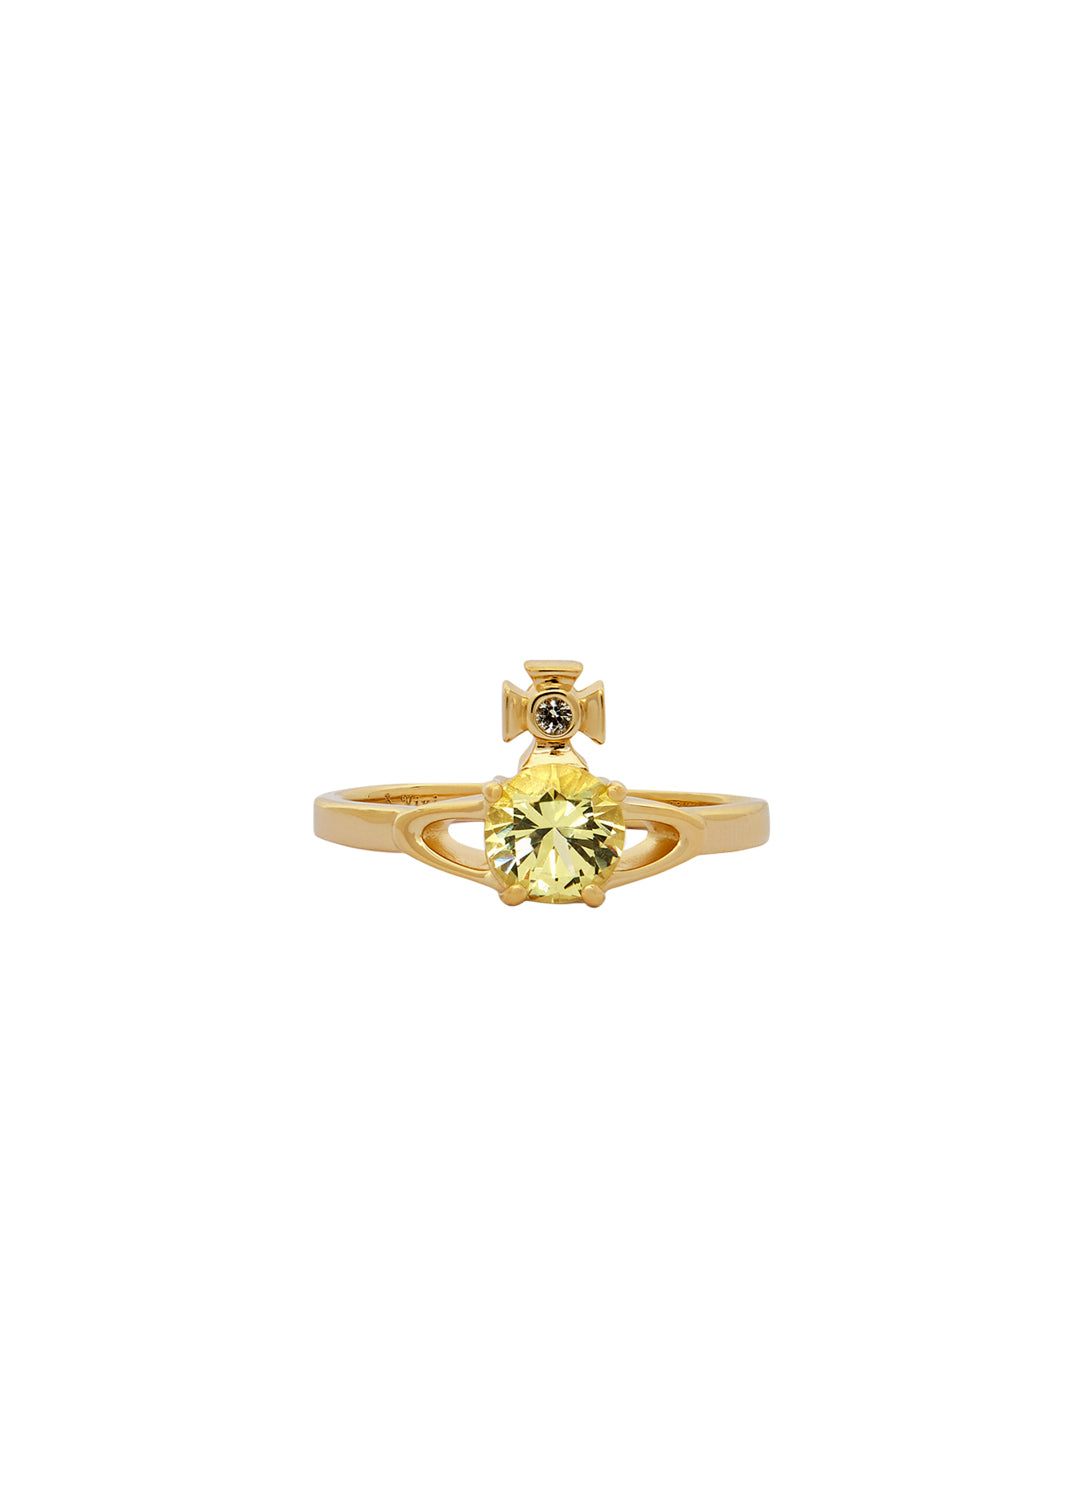 Reina Petite Ring - Gold/Jonquil - 64040006-01R406-SM – Sarah Layton